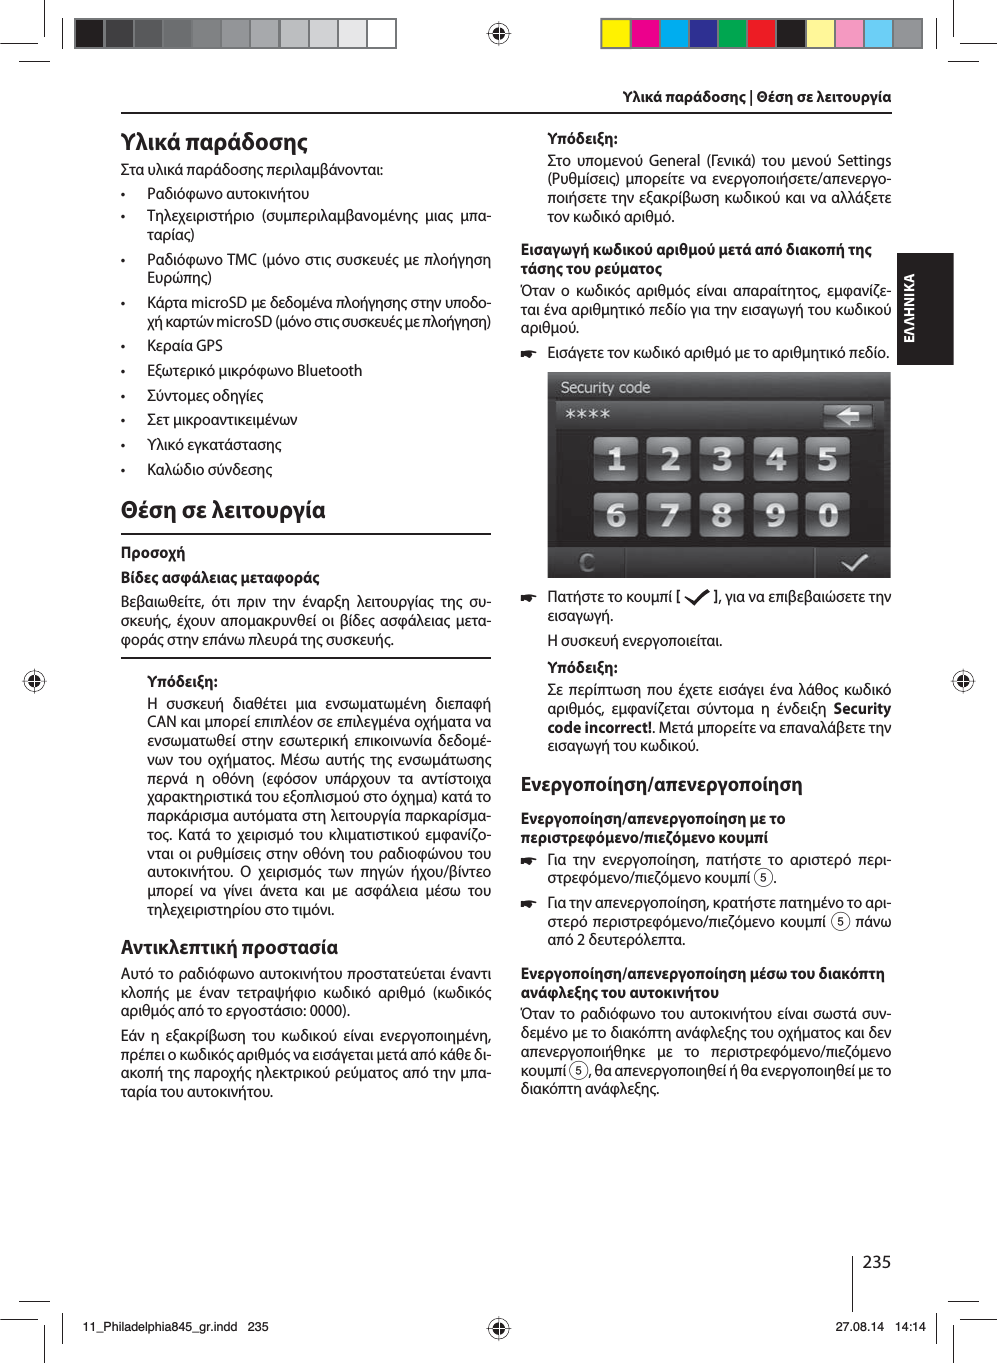 235ΕΛΛΗΝΙΚΑΥλικά παράδοσηΣτα υλικά παράδοση περιλαβάνονται: • Ραδιόφωνο αυτοκινήτου • Τηλεχειριστήριο (συπεριλαβανοένη ια πα-ταρία) • Ραδιόφωνο TMC (όνο στι συσκευέ ε πλοήγηση Ευρώπη) • Κάρτα microSD ε δεδοένα πλοήγηση στην υποδο-χή καρτών microSD (όνο στι συσκευέ ε πλοήγηση) • Κεραία GPS • Εξωτερικό ικρόφωνο Bluetooth • Σύντοε οδηγίε • Σετ ικροαντικειένων • Υλικό εγκατάσταση • Καλώδιο σύνδεσηΘέση σε λειτουργίαΠροσοχήΒίδε ασφάλεια εταφοράΒεβαιωθείτε, ότι πριν την έναρξη λειτουργία τη συ-σκευή, έχουν αποακρυνθεί οι βίδε ασφάλεια ετα-φορά στην επάνω πλευρά τη συσκευή.Υπόδειξη:Η συσκευή διαθέτει ια ενσωατωένη διεπαφή CAN και πορεί επιπλέον σε επιλεγένα οχήατα να ενσωατωθεί στην εσωτερική επικοινωνία δεδοέ-νων του οχήατο. Μέσω αυτή τη ενσωάτωση περνά η οθόνη (εφόσον υπάρχουν τα αντίστοιχα χαρακτηριστικά του εξοπλισού στο όχηα) κατά το παρκάρισα αυτόατα στη λειτουργία παρκαρίσα-το. Κατά το χειρισό του κλιατιστικού εφανίζο-νται οι ρυθίσει στην οθόνη του ραδιοφώνου του αυτοκινήτου. Ο χειρισό των πηγών ήχου/βίντεο πορεί να γίνει άνετα και ε ασφάλεια έσω του τηλεχειριστηρίου στο τιόνι. Αντικλεπτική προστασίαΑυτό το ραδιόφωνο αυτοκινήτου προστατεύεται έναντι κλοπή ε έναν τετραψήφιο κωδικό αριθό (κωδικό αριθό από το εργοστάσιο: 0000).Εάν η εξακρίβωση του κωδικού είναι ενεργοποιηένη, πρέπει ο κωδικό αριθό να εισάγεται ετά από κάθε δι-ακοπή τη παροχή ηλεκτρικού ρεύατο από την πα-ταρία του αυτοκινήτου. Υπόδειξη:Στο υποενού General (Γενικά) του ενού Settings (Ρυθίσει) πορείτε να ενεργοποιήσετε/απενεργο-ποιήσετε την εξακρίβωση κωδικού και να αλλάξετε τον κωδικό αριθό.Εισαγωγή κωδικού αριθού ετά από διακοπή τη τάση του ρεύατοΌταν ο κωδικό αριθό είναι απαραίτητο, εφανίζε-ται ένα αριθητικό πεδίο για την εισαγωγή του κωδικού αριθού. 쏅Εισάγετε τον κωδικό αριθό ε το αριθητικό πεδίο.  쏅Πατήστε το κουπί    , για να επιβεβαιώσετε την εισαγωγή.Η συσκευή ενεργοποιείται.Υπόδειξη:Σε περίπτωση που έχετε εισάγει ένα λάθο κωδικό αριθό, εφανίζεται σύντοα η ένδειξη Security code incorrect!. Μετά πορείτε να επαναλάβετε την εισαγωγή του κωδικού.Ενεργοποίηση/απενεργοποίησηΕνεργοποίηση/απενεργοποίηση ε το περιστρεφόενο/πιεζόενο κουπί 쏅Για την ενεργοποίηση, πατήστε το αριστερό περι-στρεφόενο/πιεζόενο κουπί 5. 쏅Για την απενεργοποίηση, κρατήστε πατηένο το αρι-στερό περιστρεφόενο/πιεζόενο κουπί 5 πάνω από 2 δευτερόλεπτα.Ενεργοποίηση/απενεργοποίηση έσω του διακόπτη ανάφλεξη του αυτοκινήτουΌταν το ραδιόφωνο του αυτοκινήτου είναι σωστά συν-δεένο ε το διακόπτη ανάφλεξη του οχήατο και δεν απενεργοποιήθηκε ε το περιστρεφόενο/πιεζόενο κουπί 5, θα απενεργοποιηθεί ή θα ενεργοποιηθεί ε το διακόπτη ανάφλεξη.Υλικά παράδοση | Θέση σε λειτουργία 11_Philadelphia845_gr.indd 23511_Philadelphia845_gr.indd   23527.08.14 14:1427.08.14   14:14